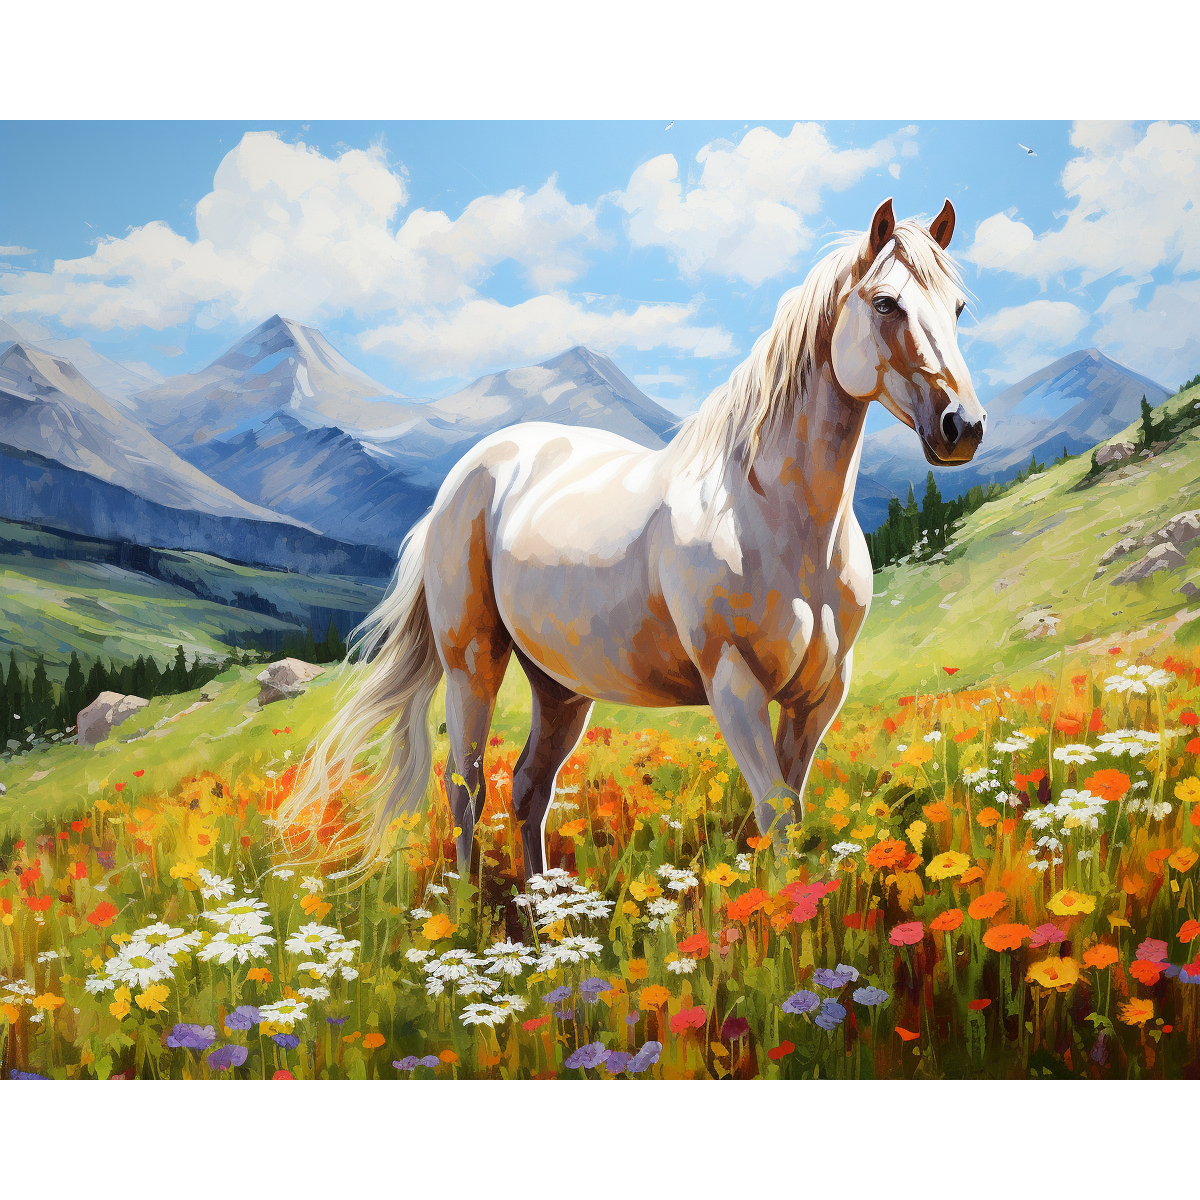 Le cheval blanc de Meadow's Grace